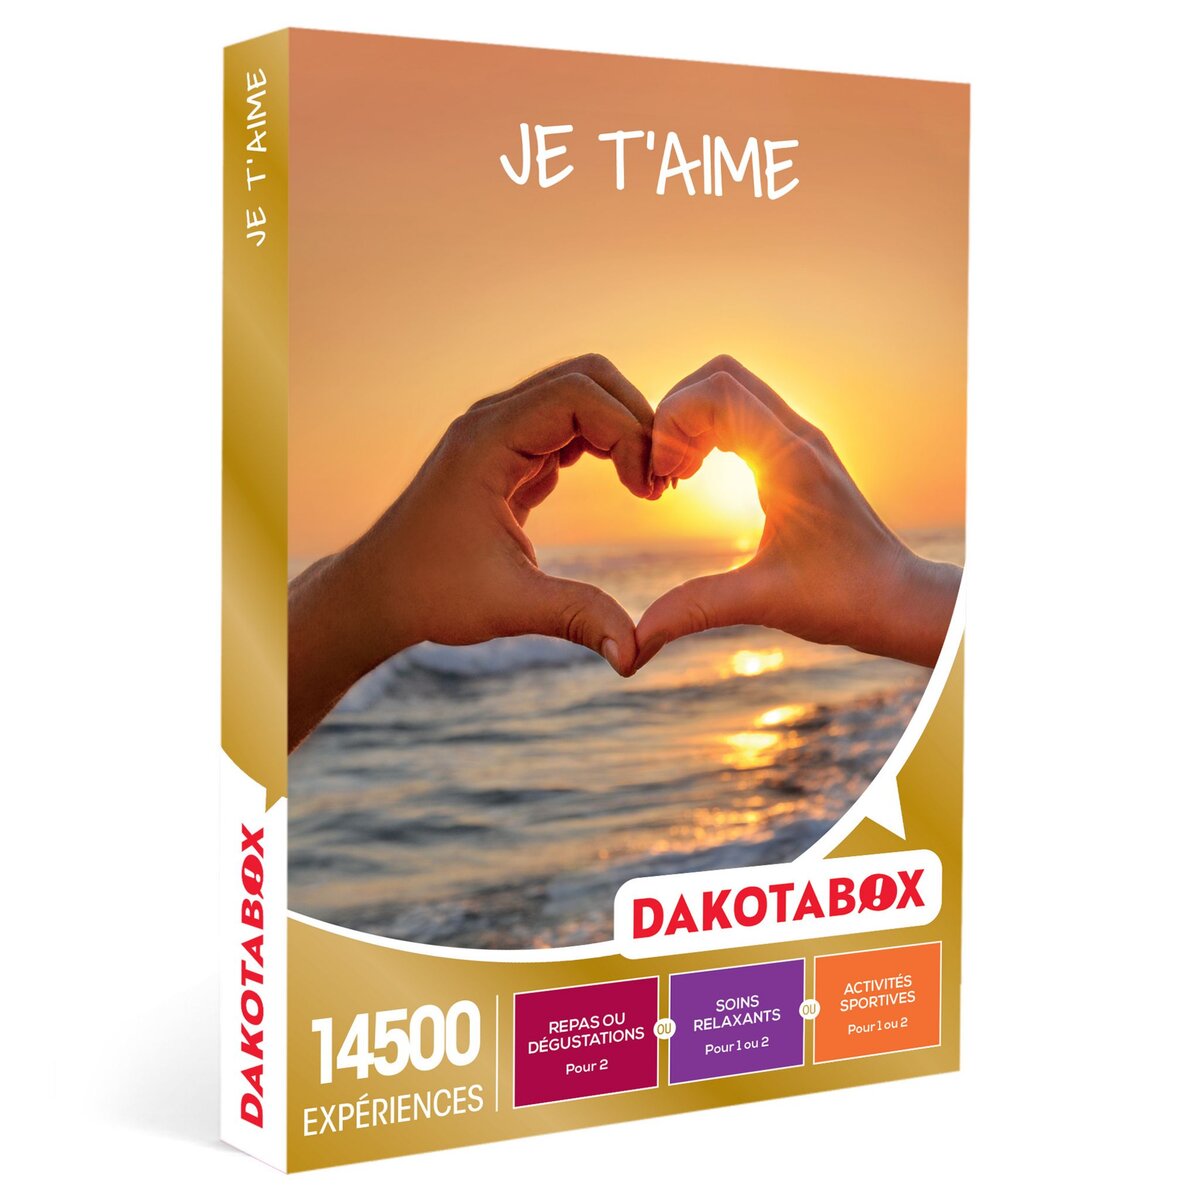 Dakotabox Coffret Cadeau - Je t'aime - 14500 expériences pour déclarer son amour : repas, soins et activités sportives